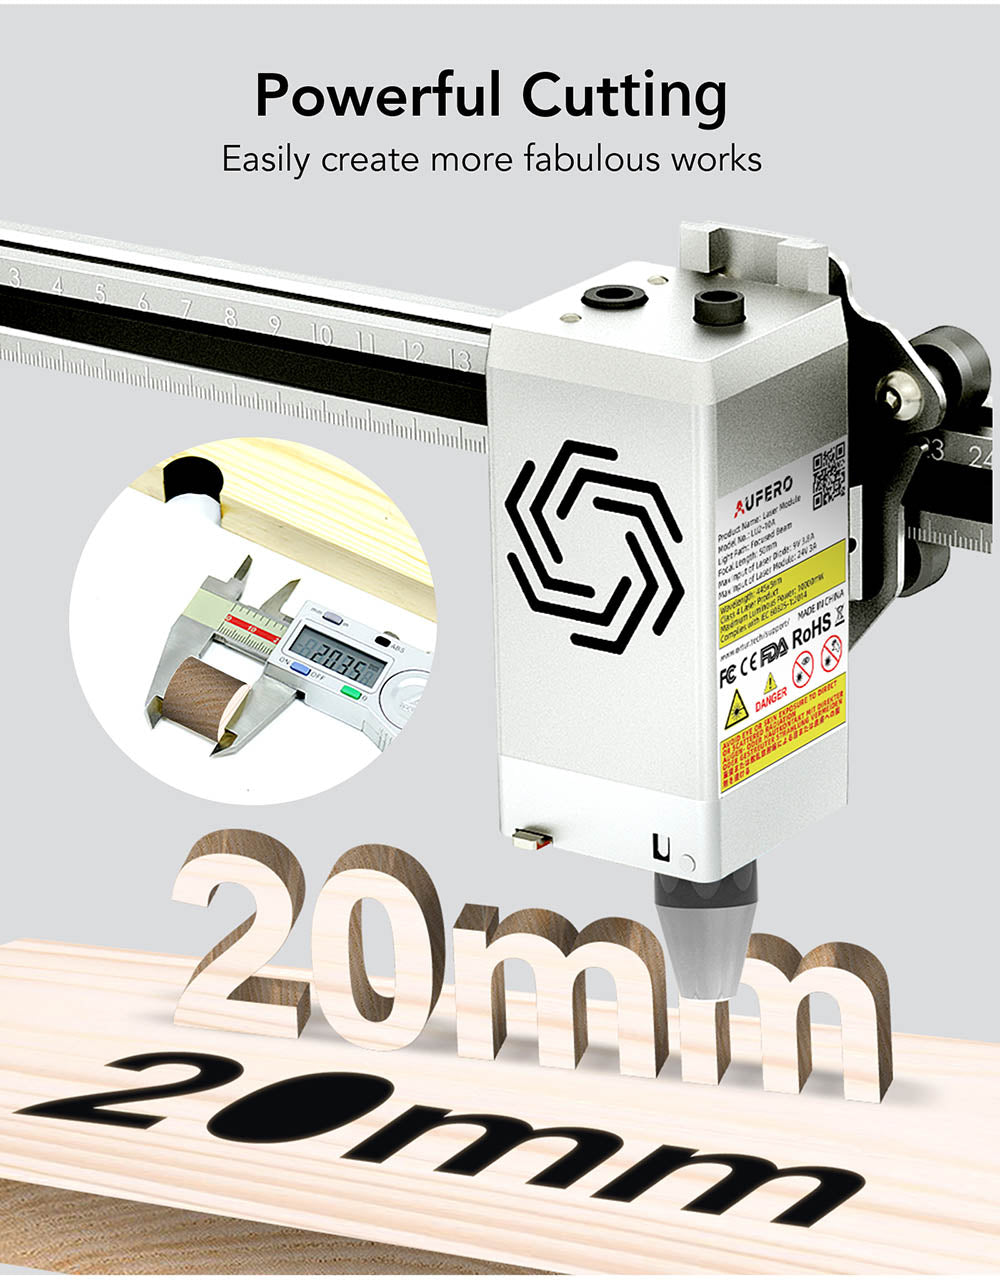 Aufero Laser 2 Laser Engraving Machine